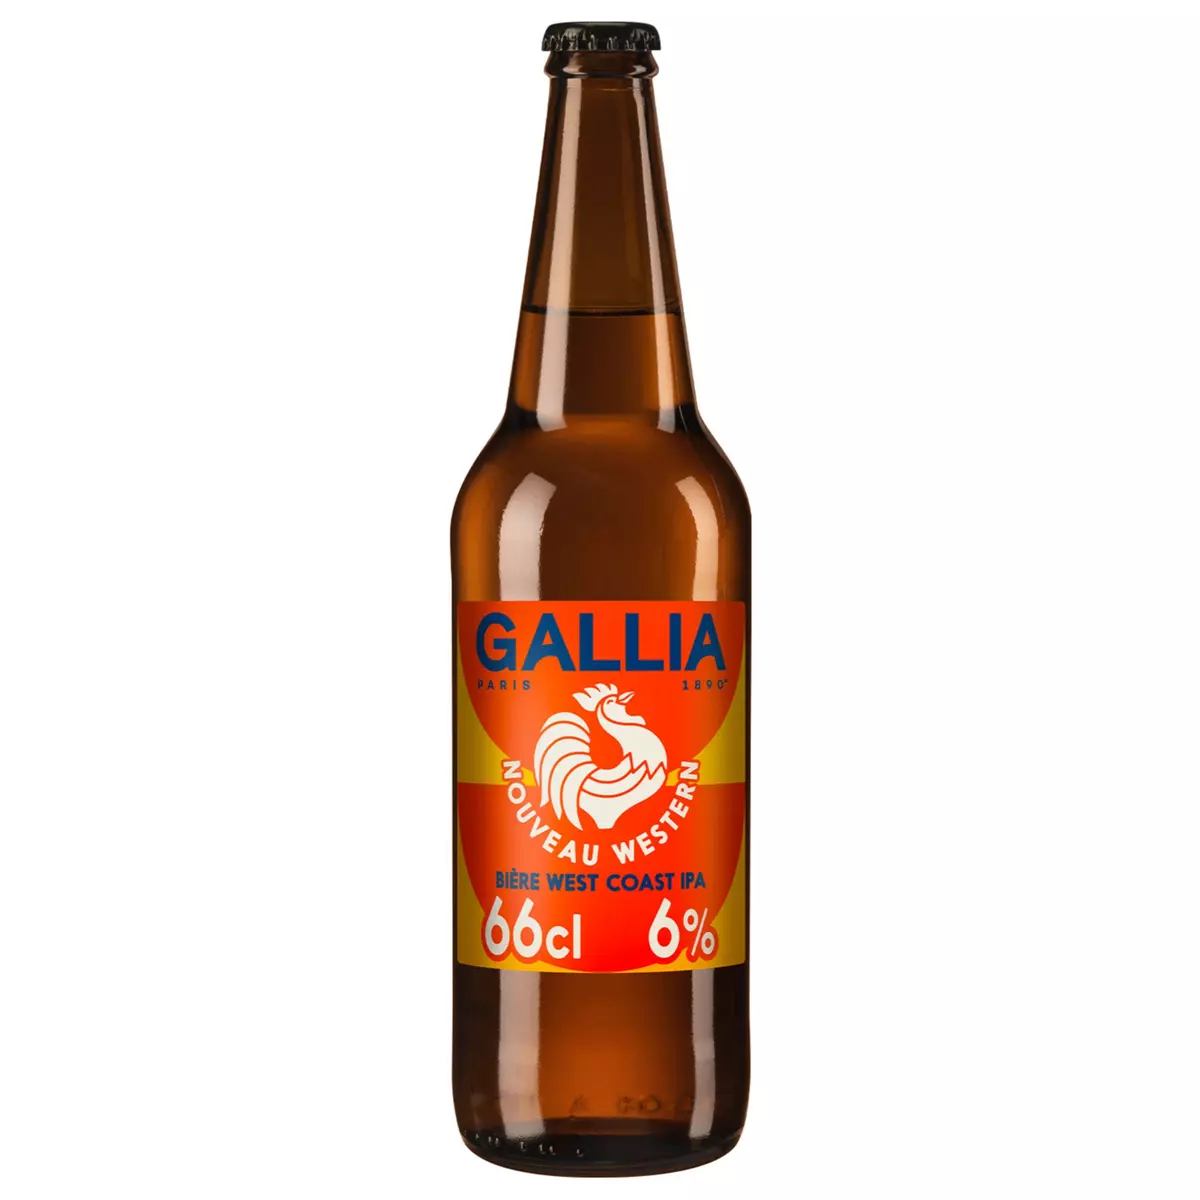 GALLIA Bière West Coast IPA 66cl